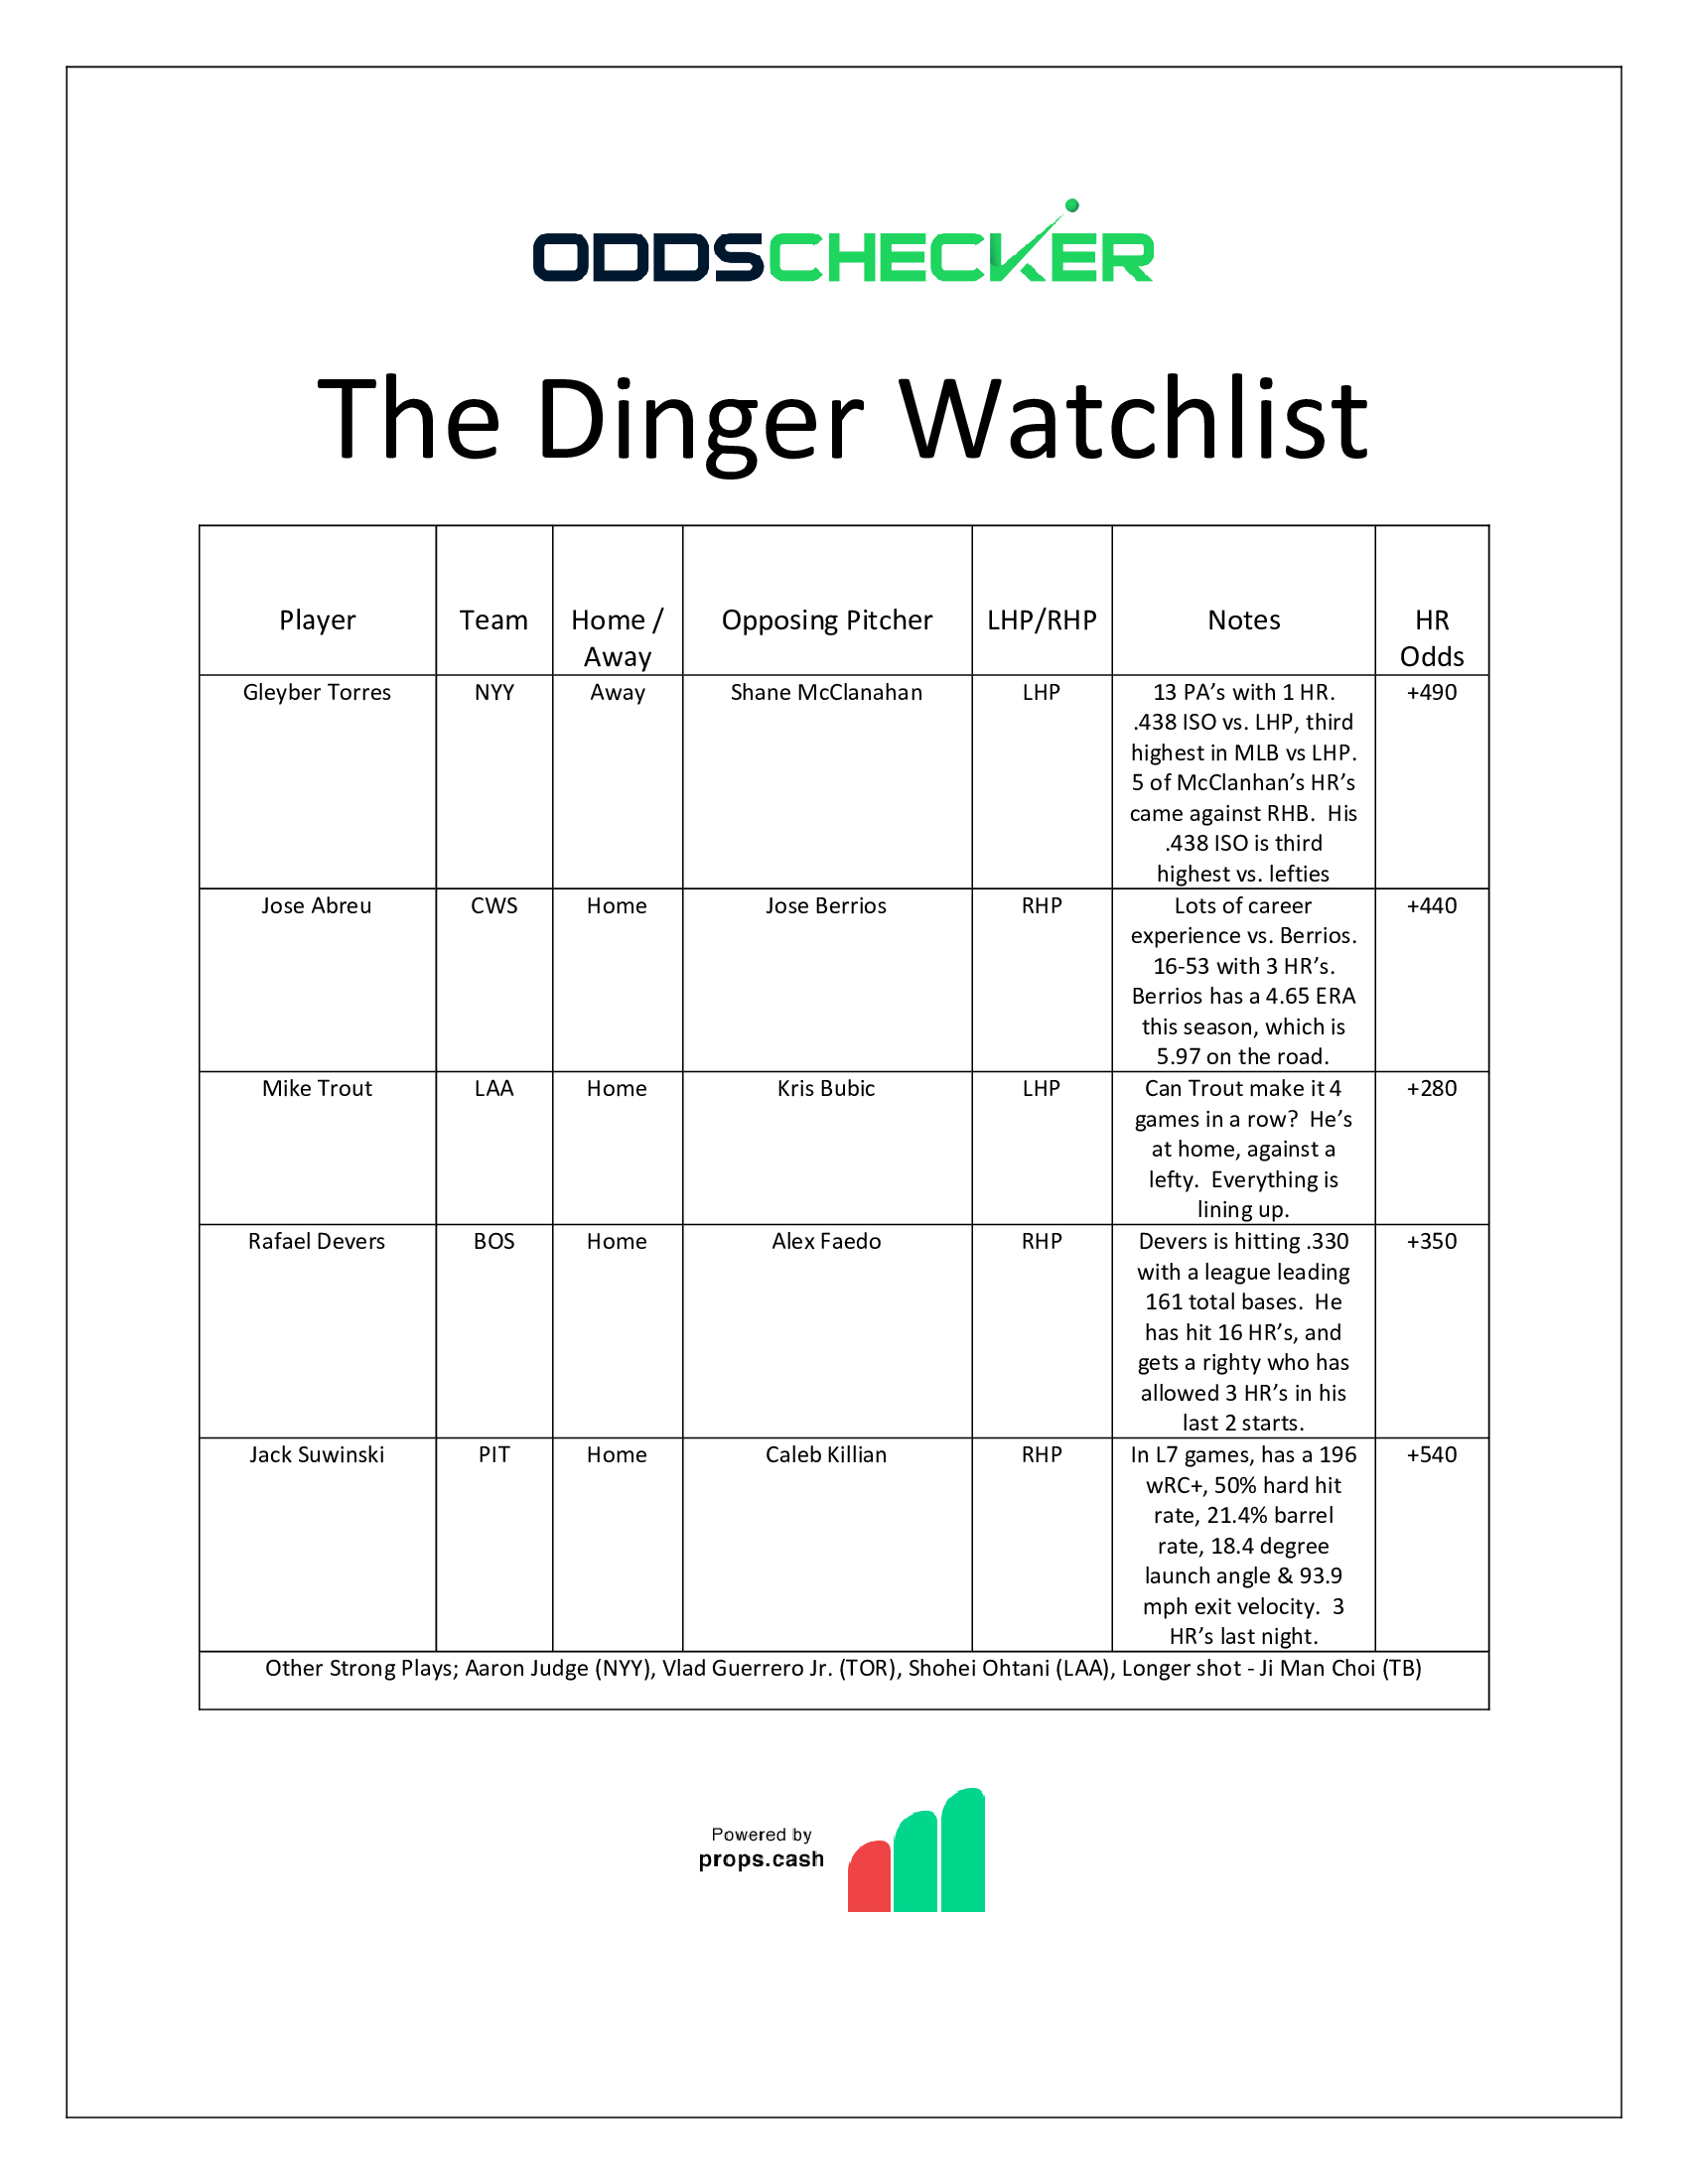 Dinger Watchlist. 6.20 updated